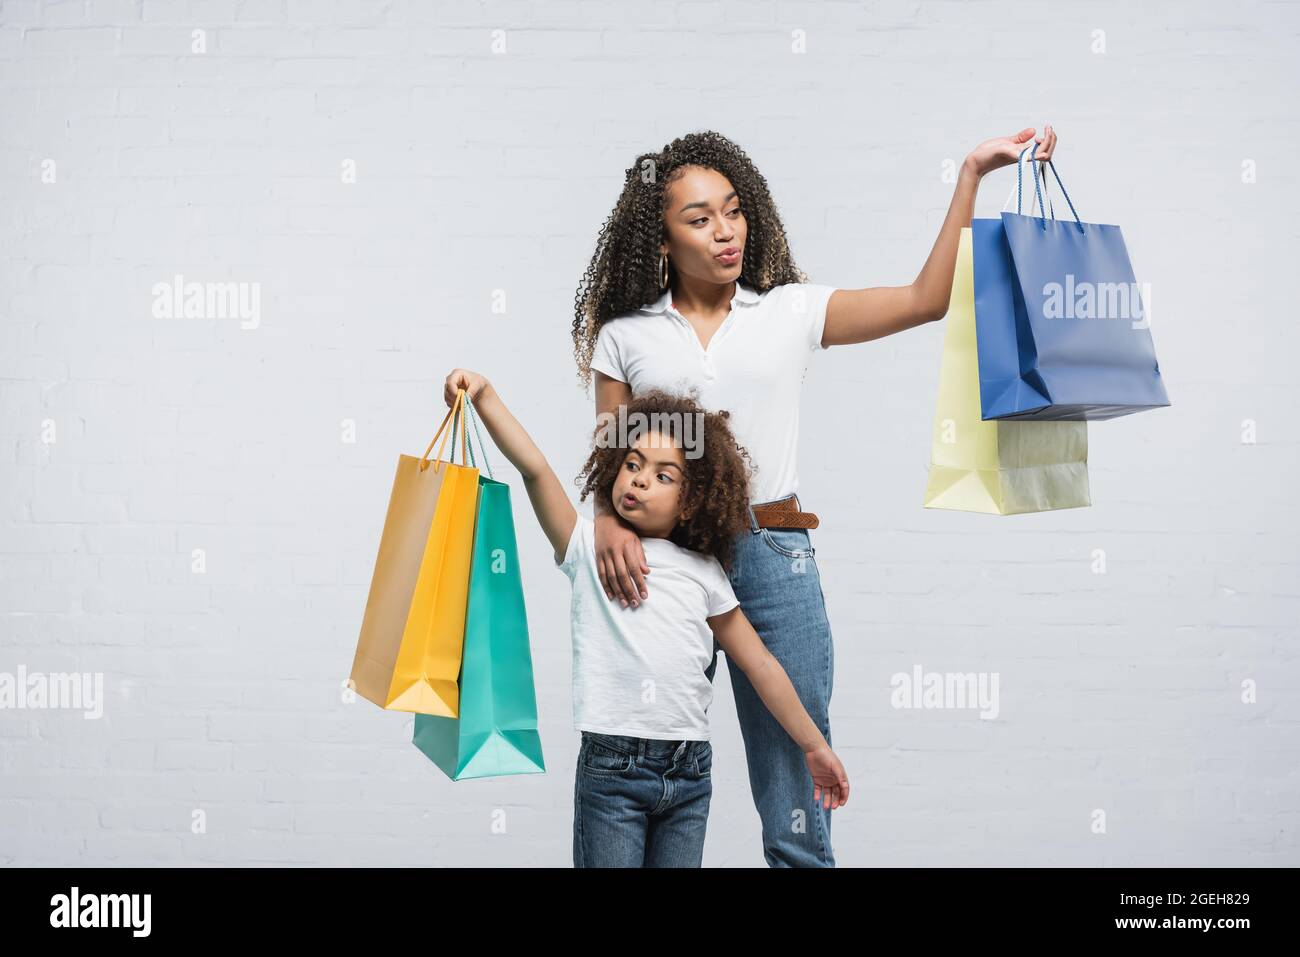 stupita donna afroamericana con la figlia puffing fuori guance mentre tiene i sacchetti di shopping sul grigio Foto Stock